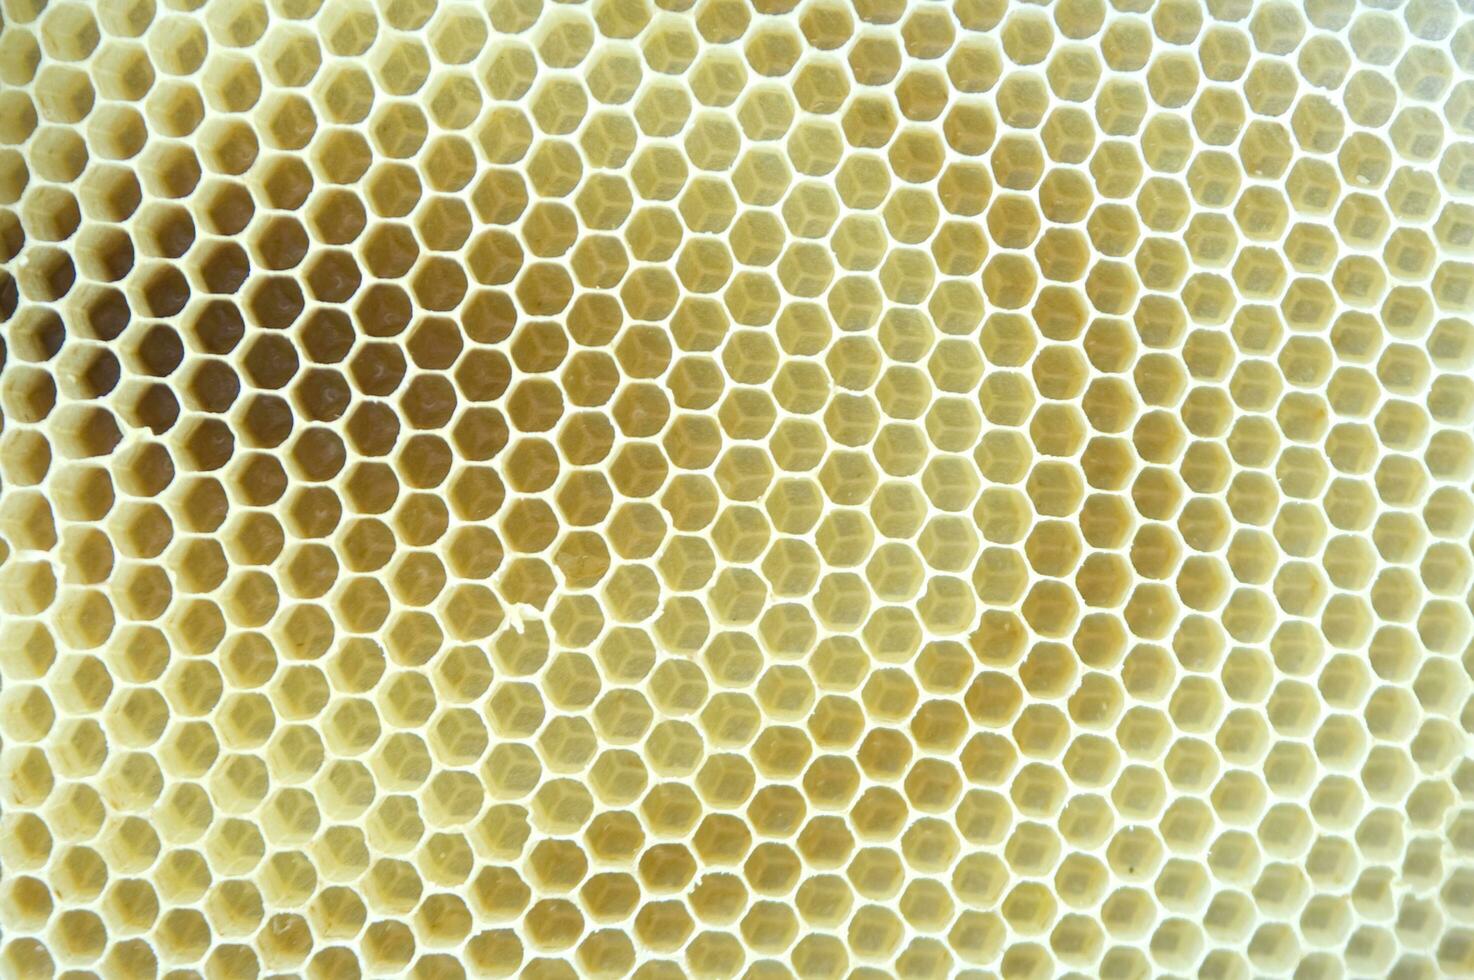 bi nässelfeber för honung produktion foto